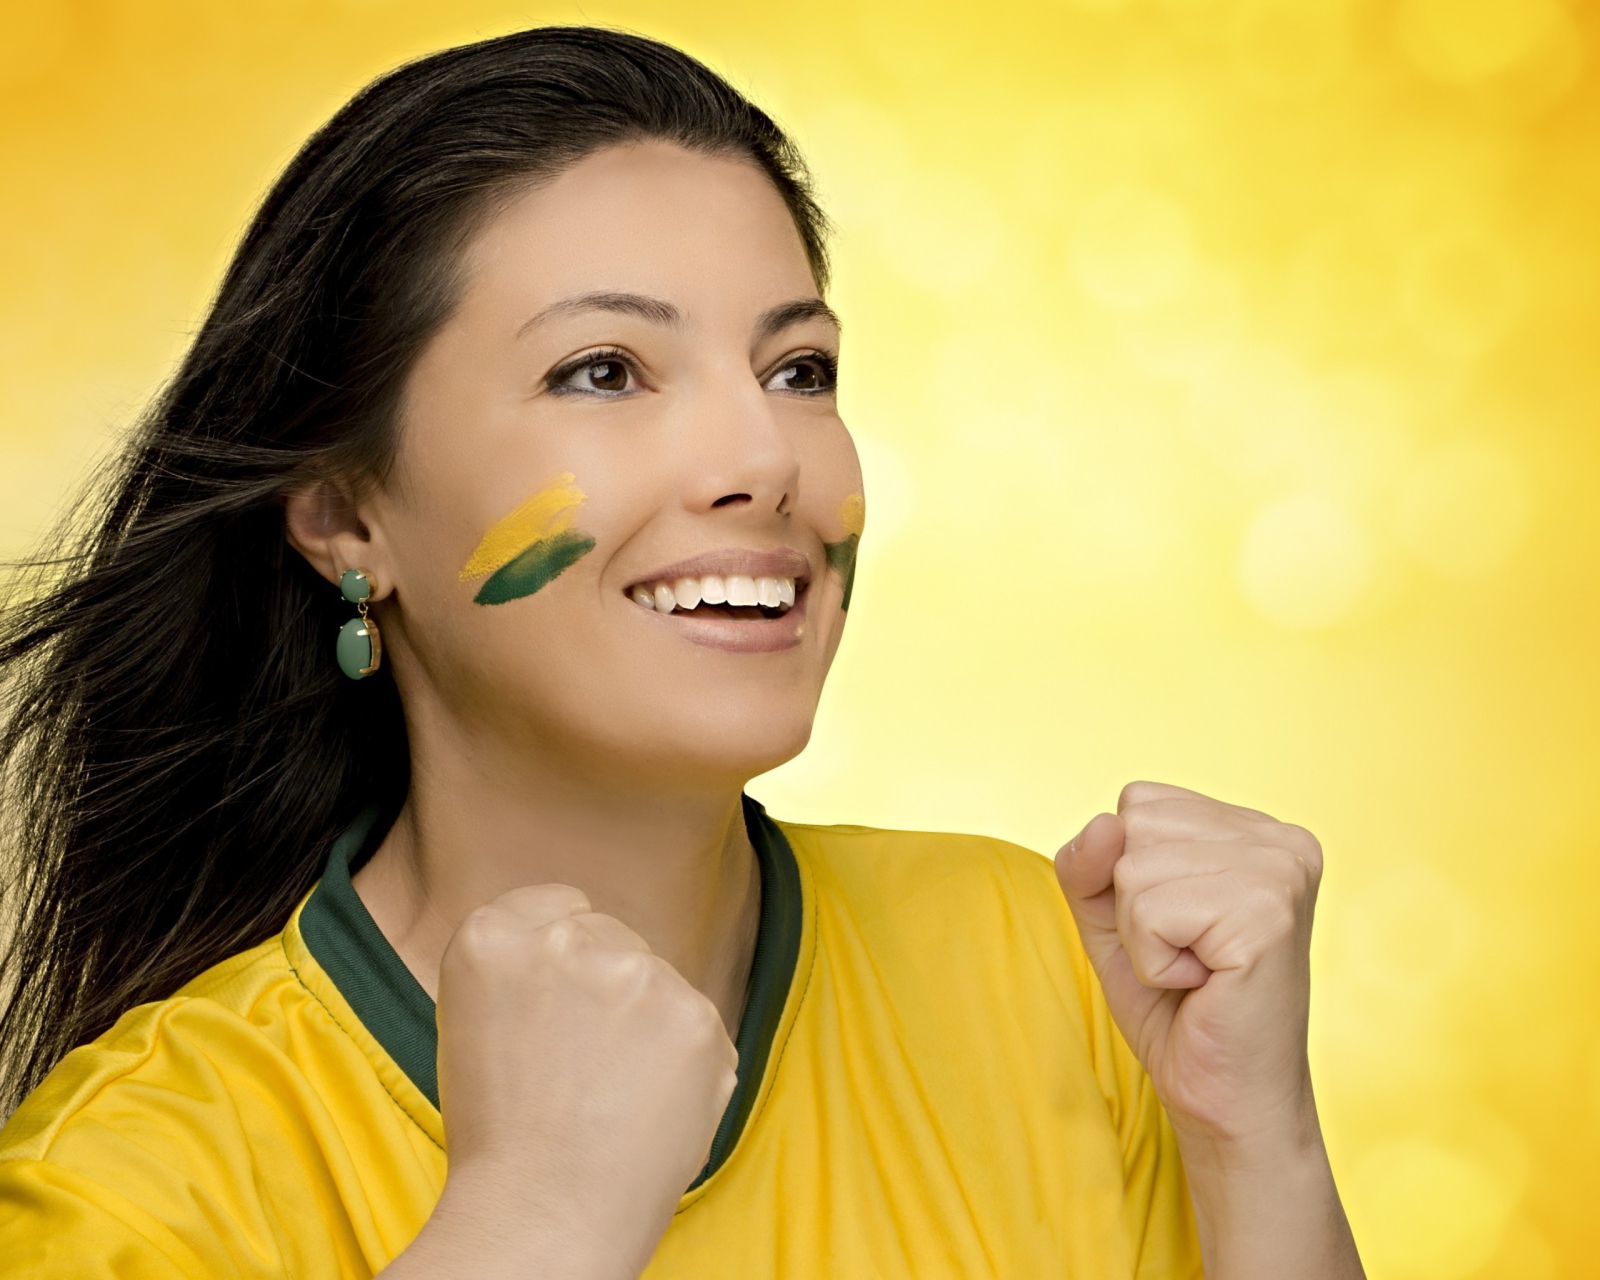 Brazil FIFA Football Cheerleader screenshot #1 1600x1280